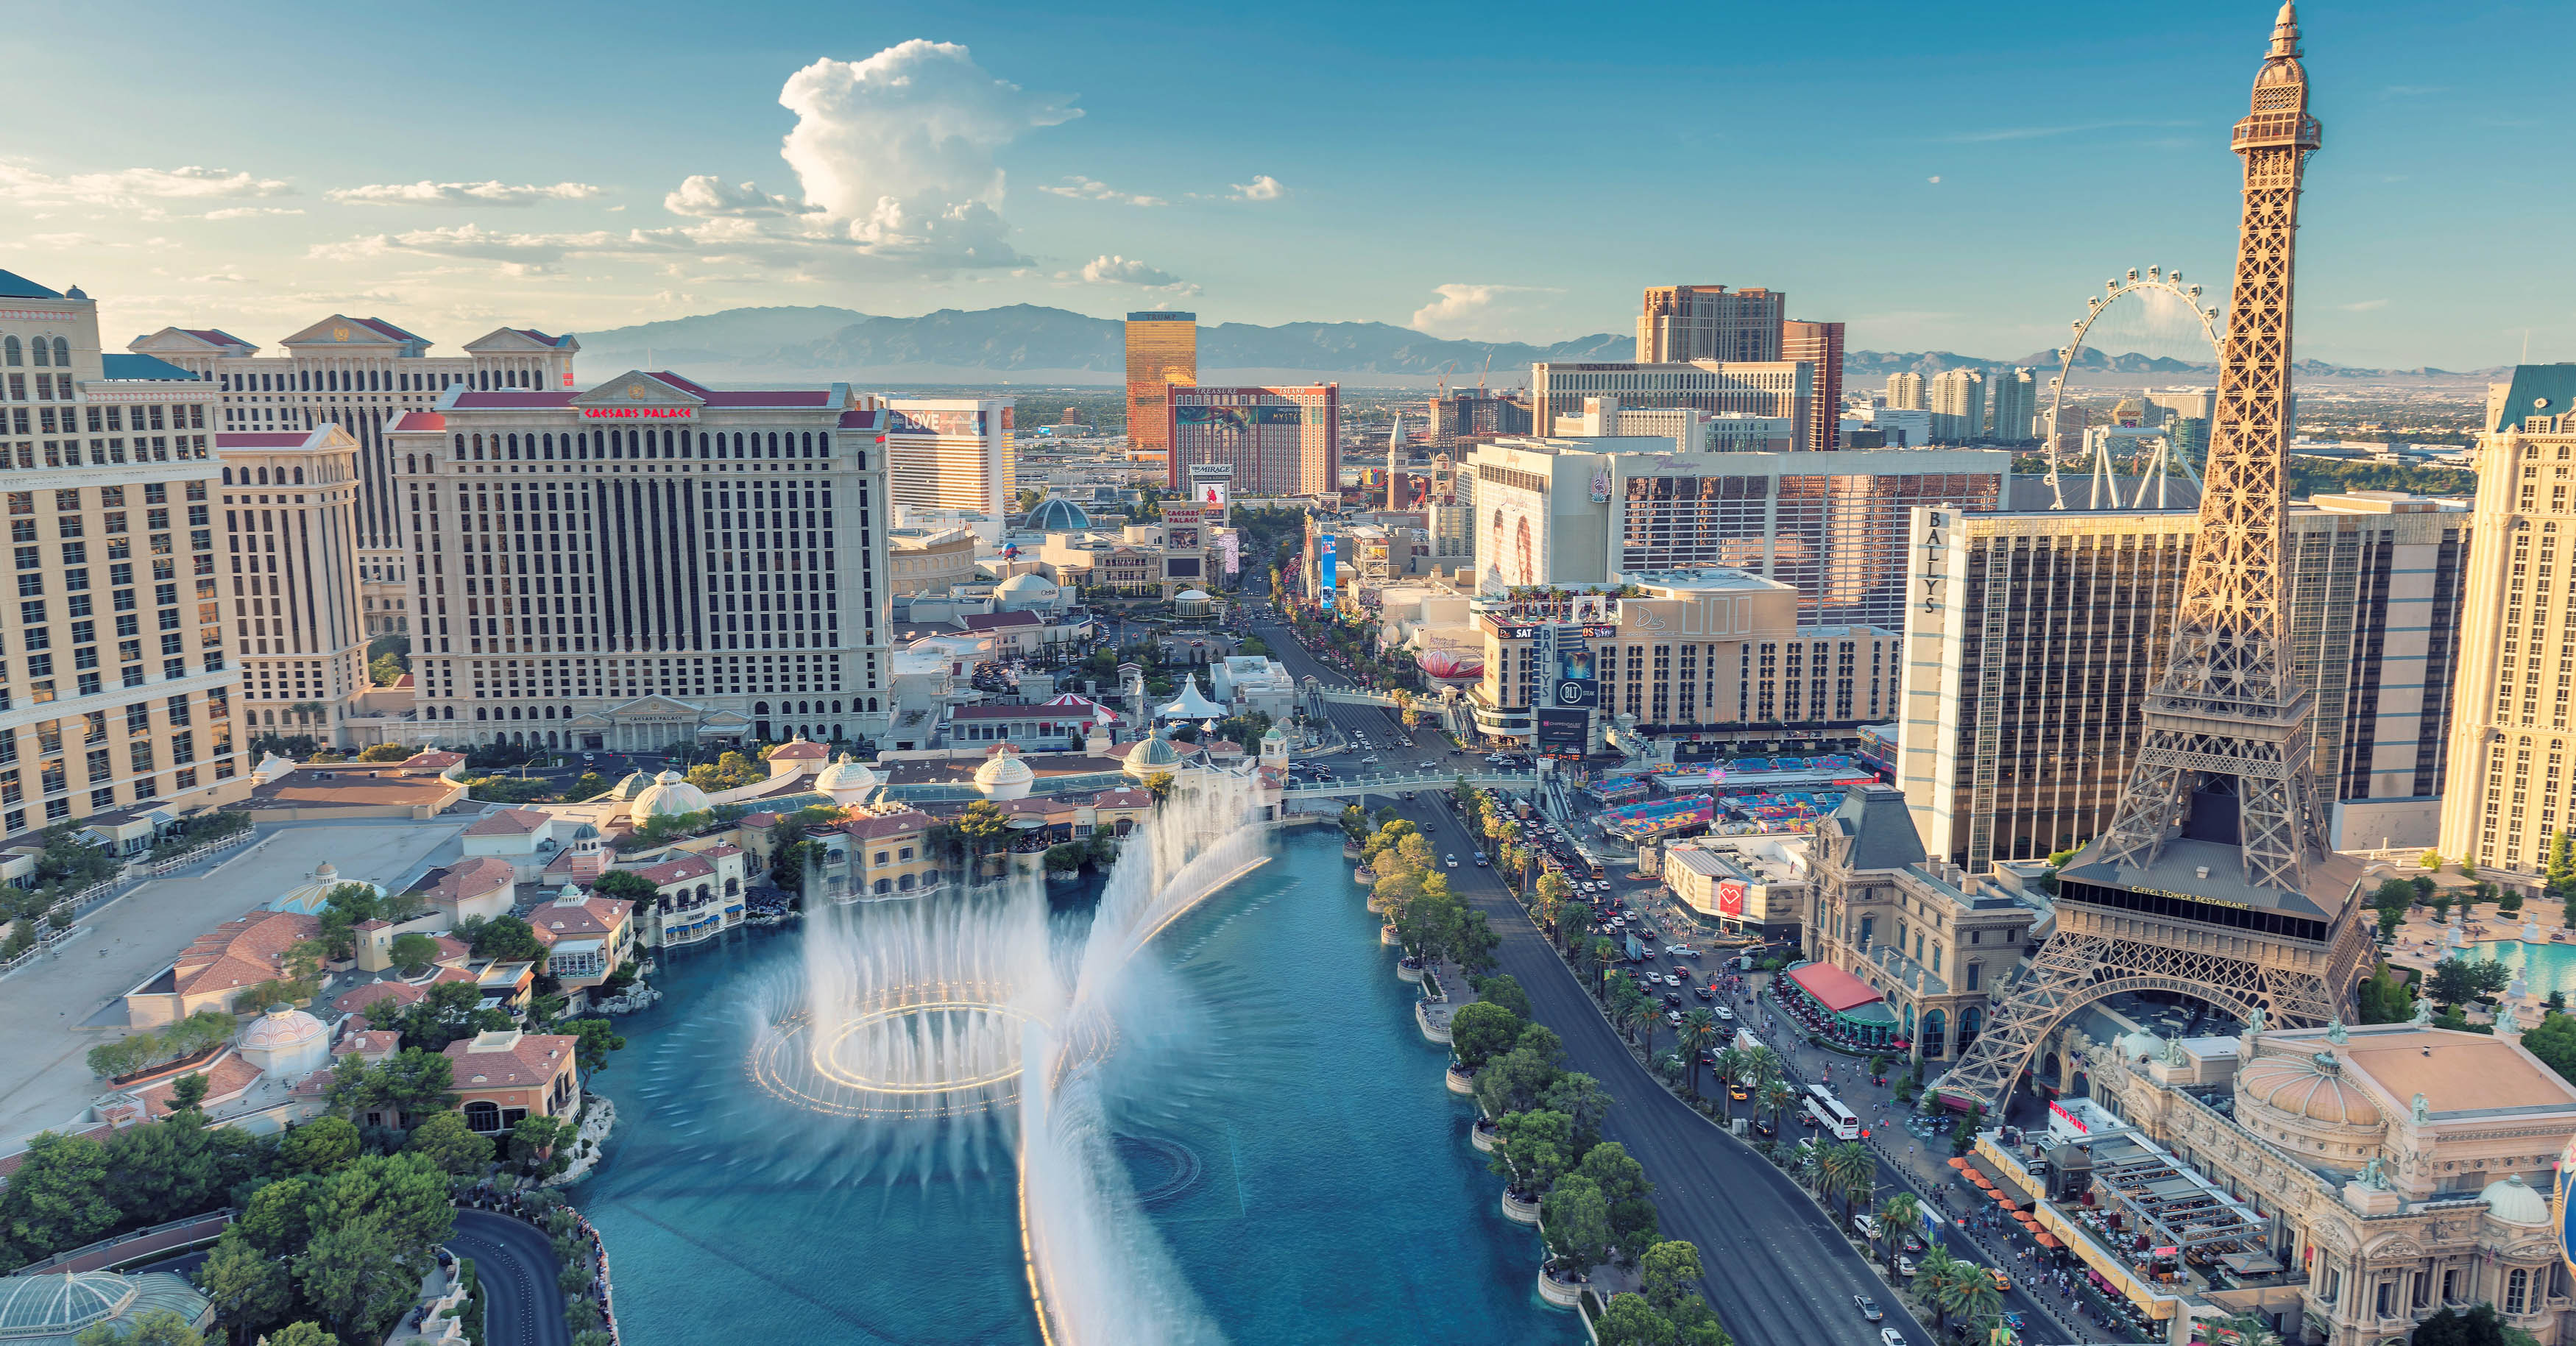 Visit us at CES Las Vegas 2020